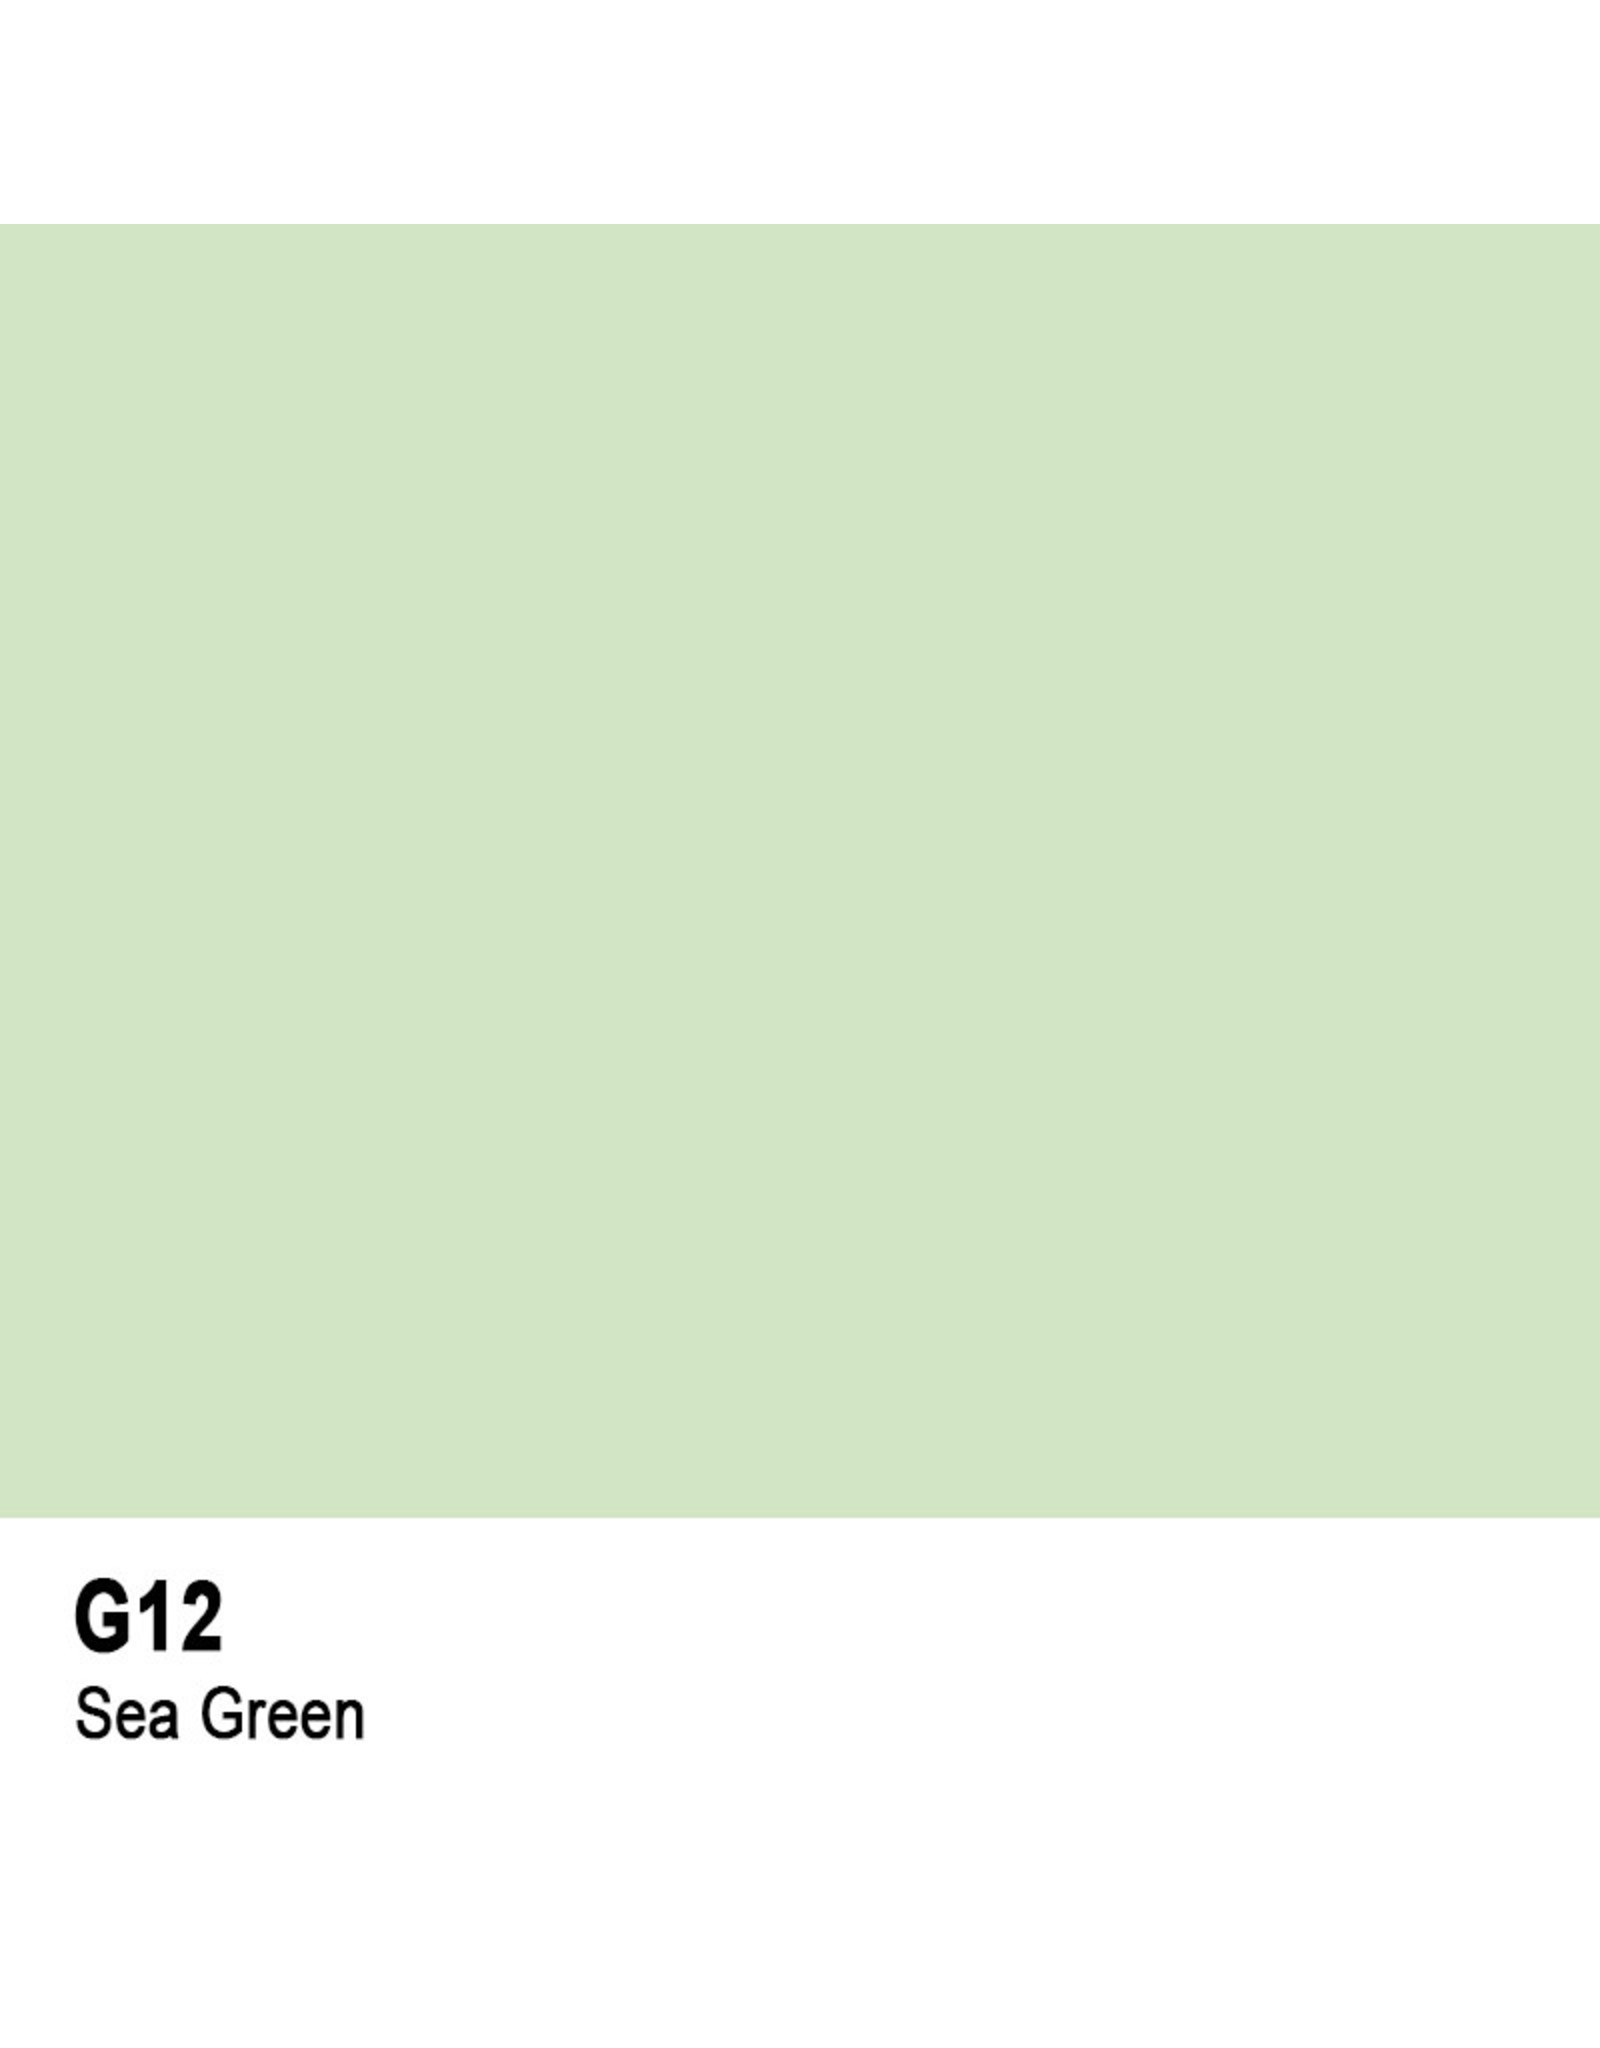 COPIC COPIC G12 SEA GREEN SKETCH MARKER